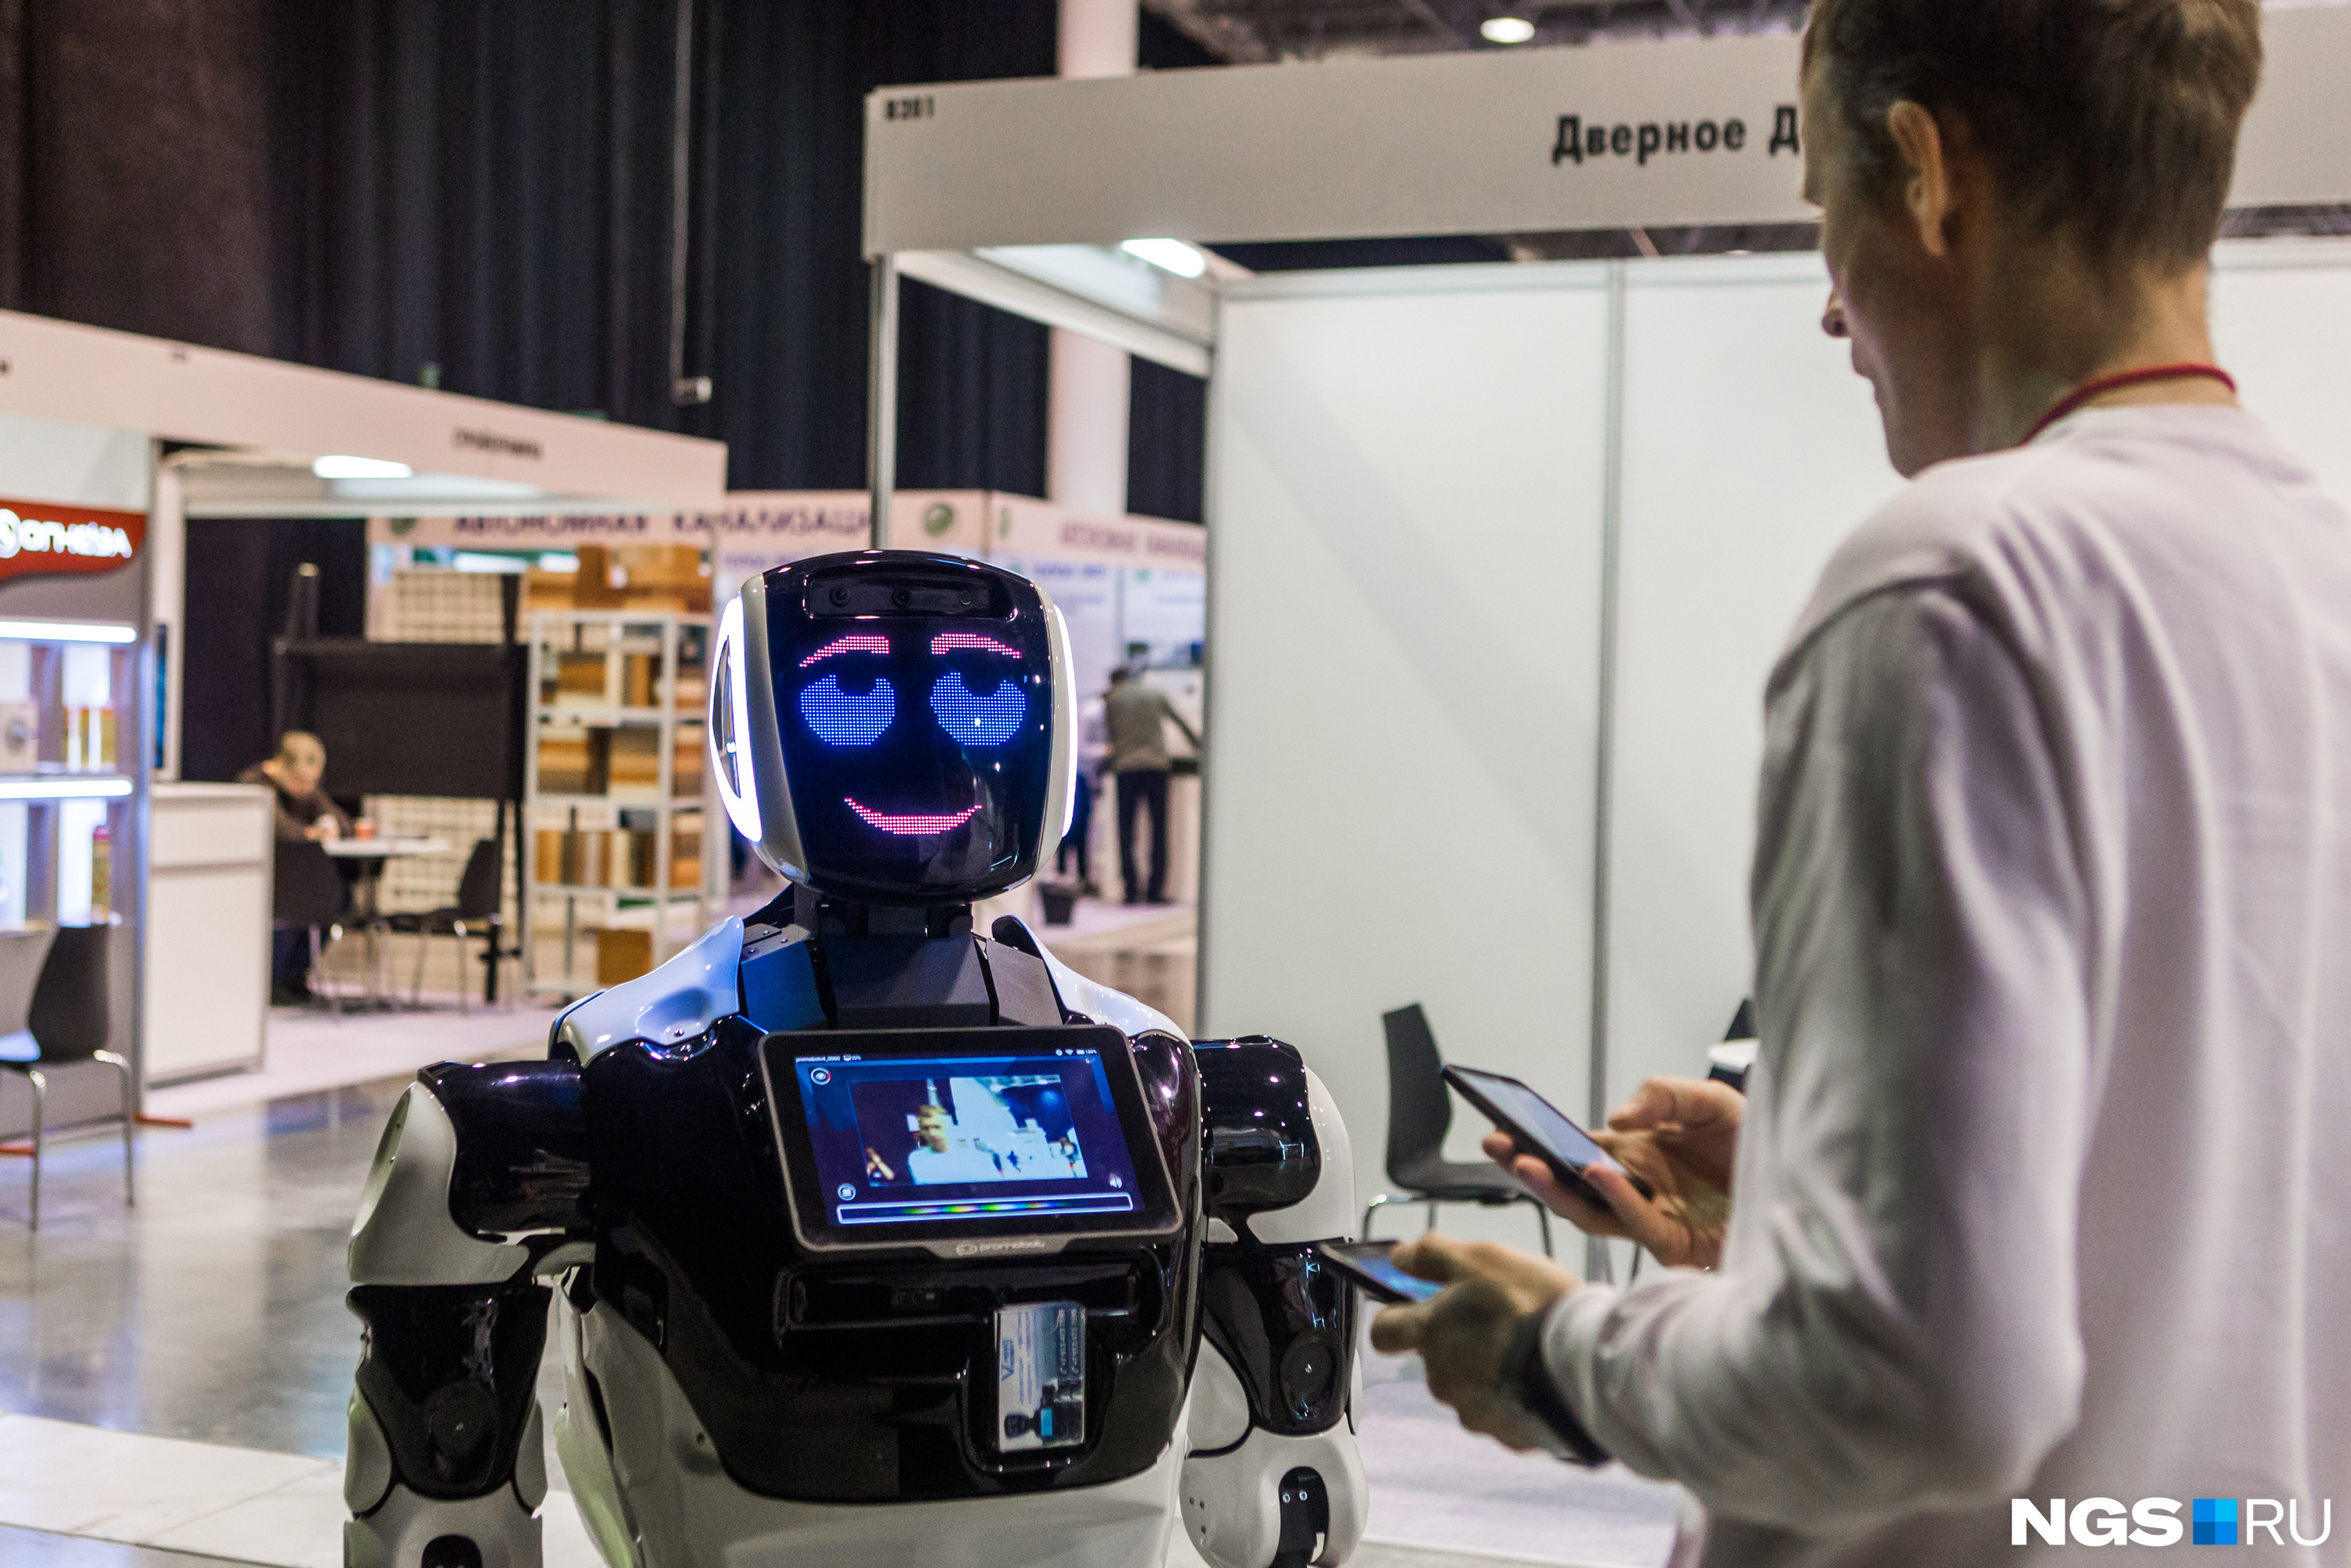 Гостей на выставке встречал робот — тоже инновация